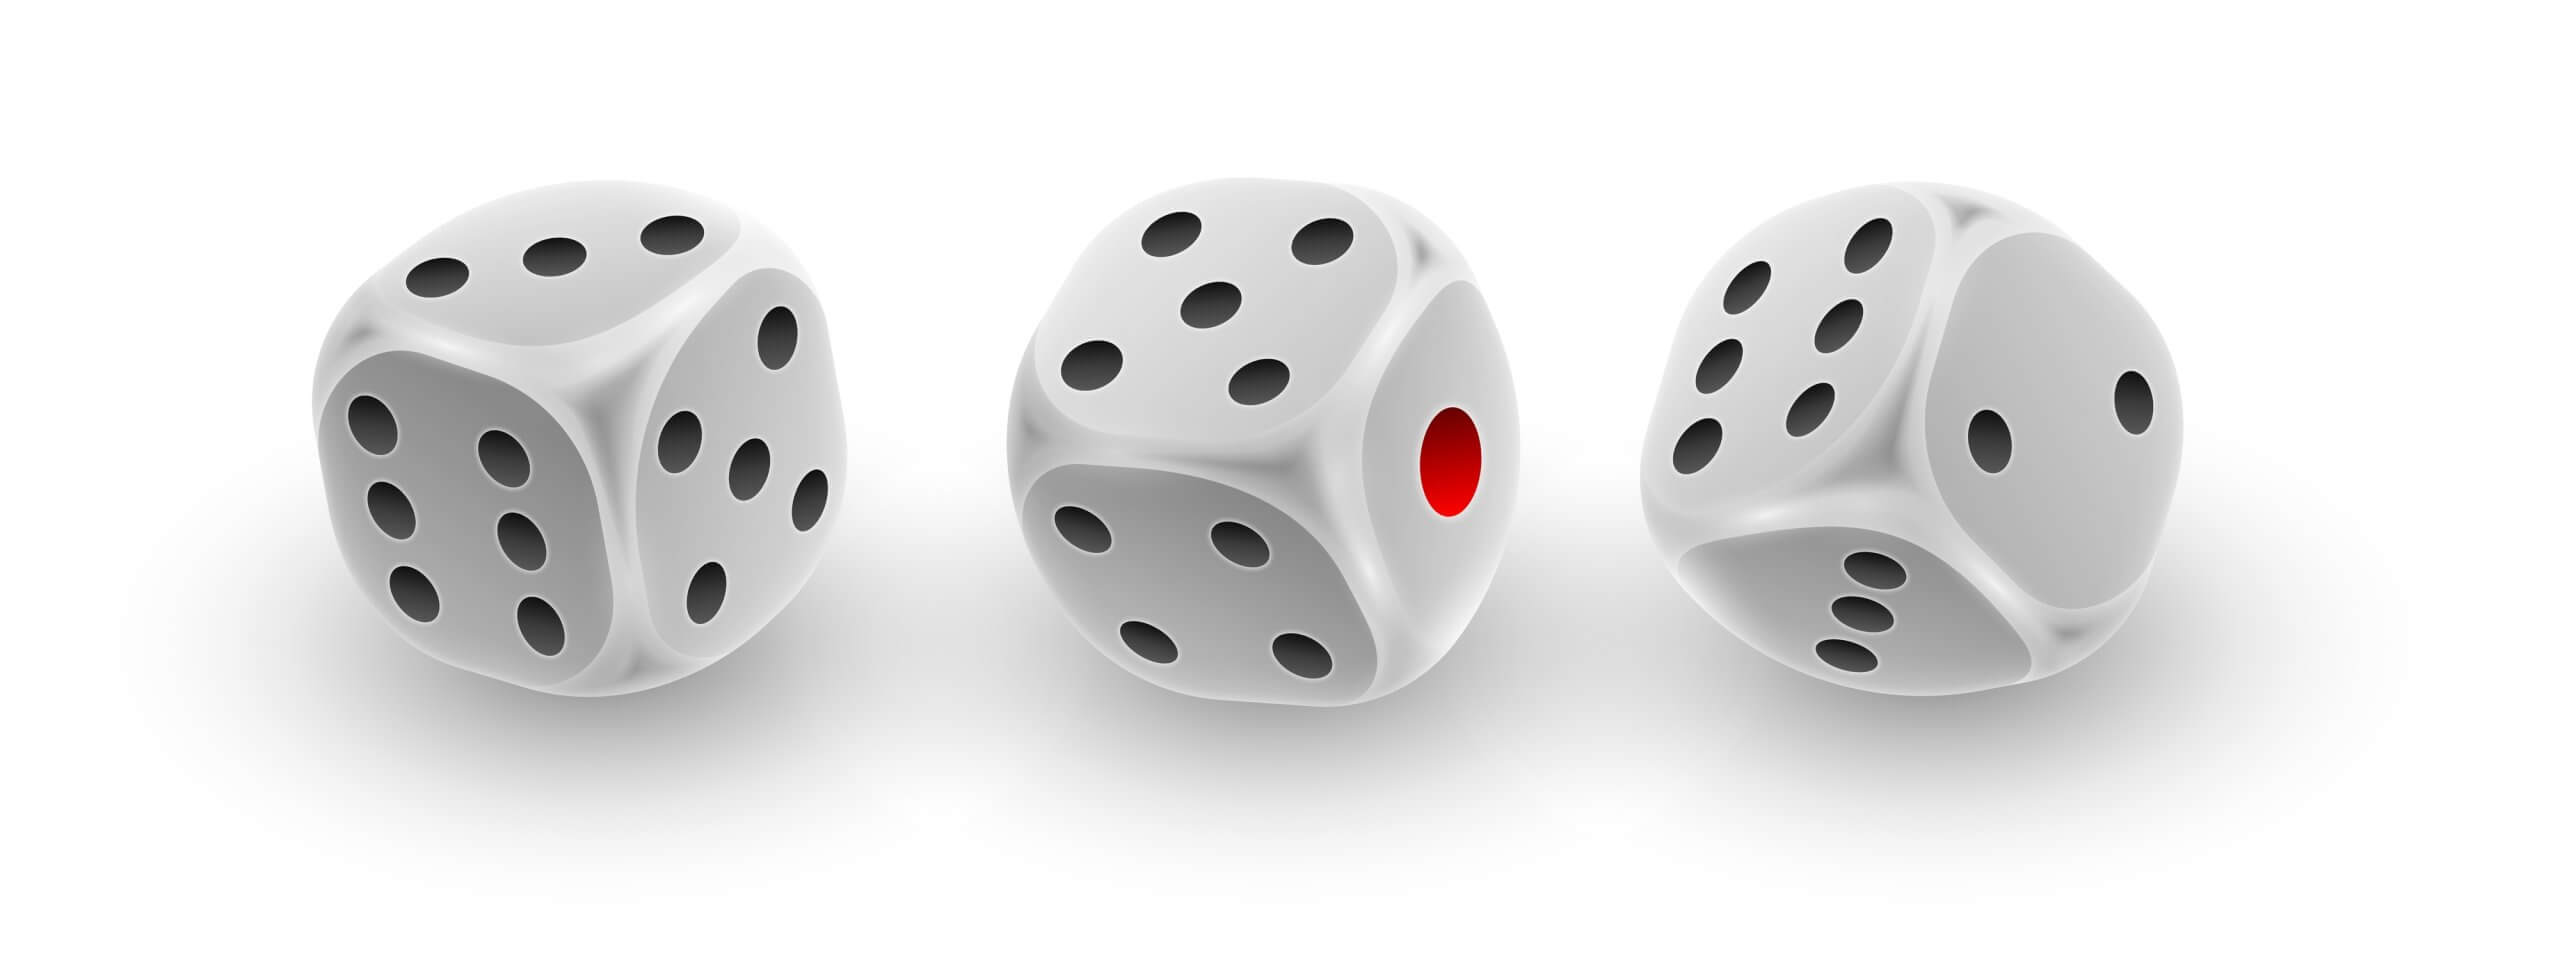 three white dice